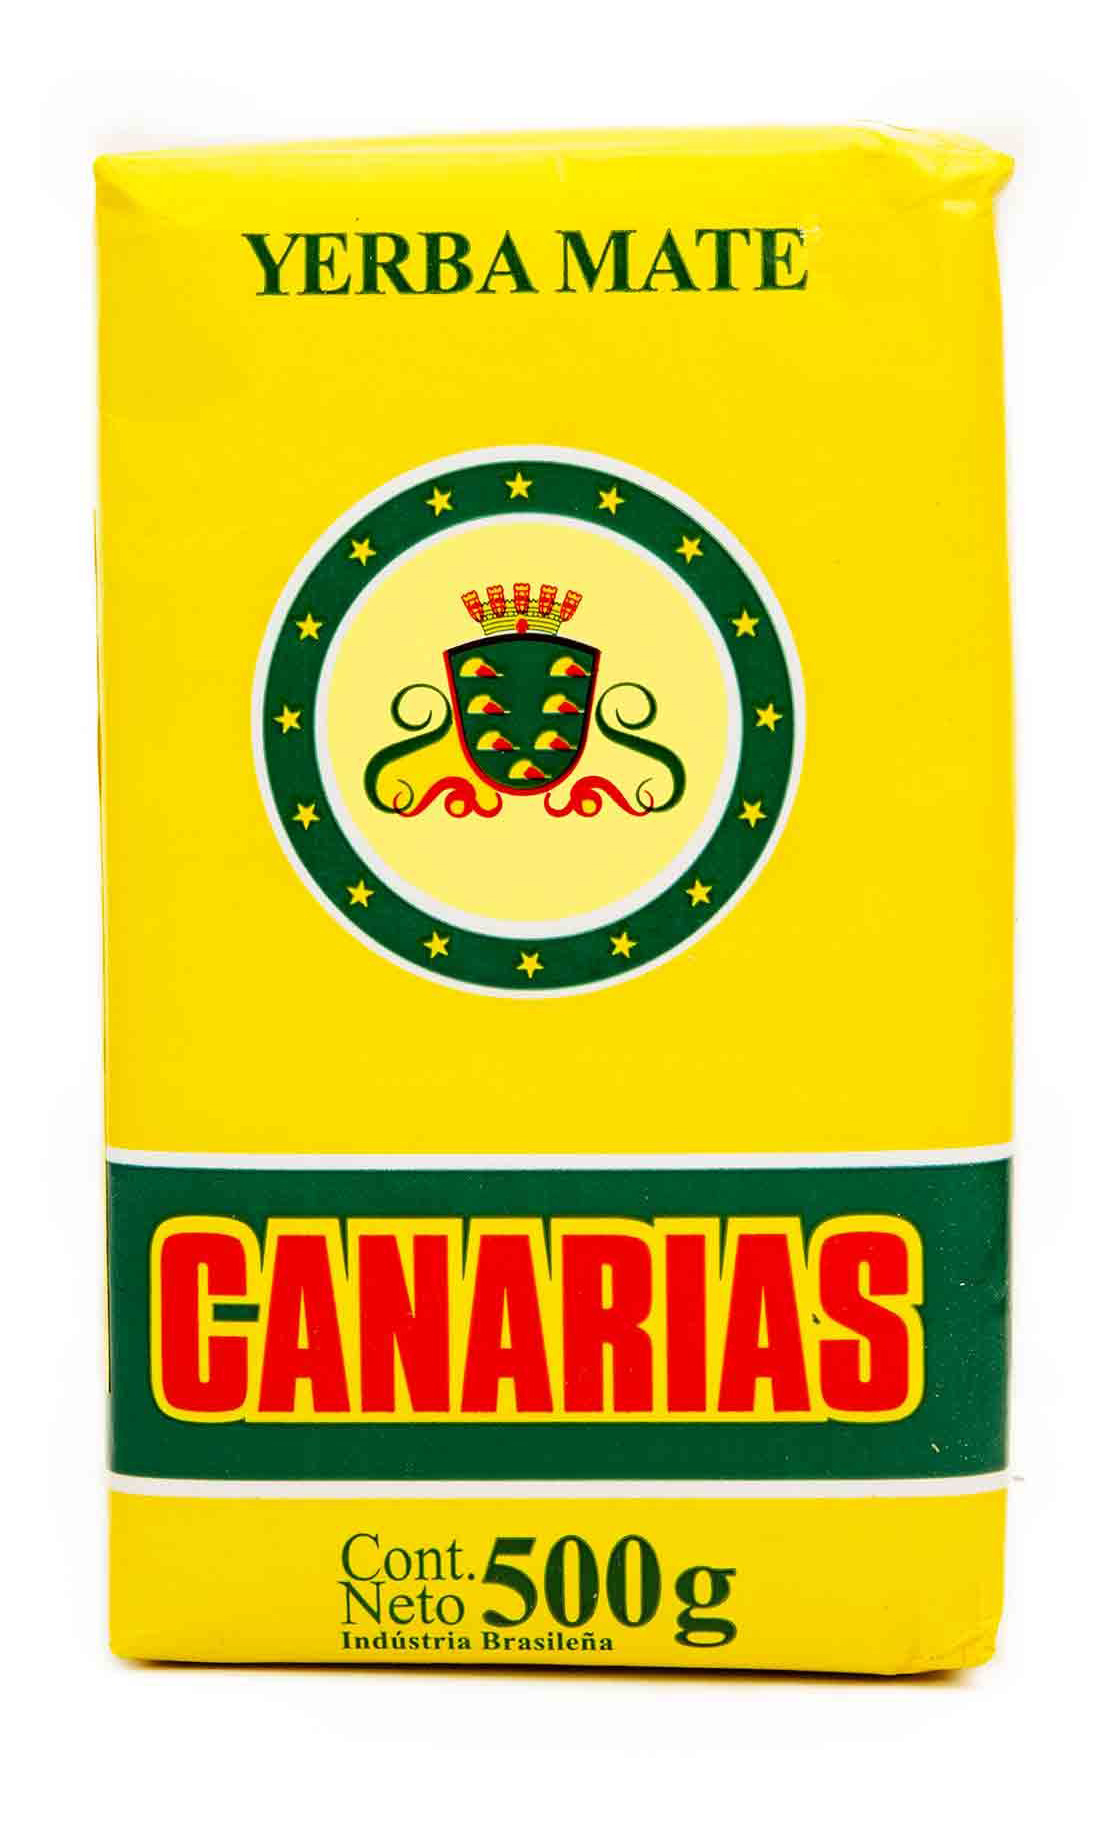 Canarias yerba mate tea